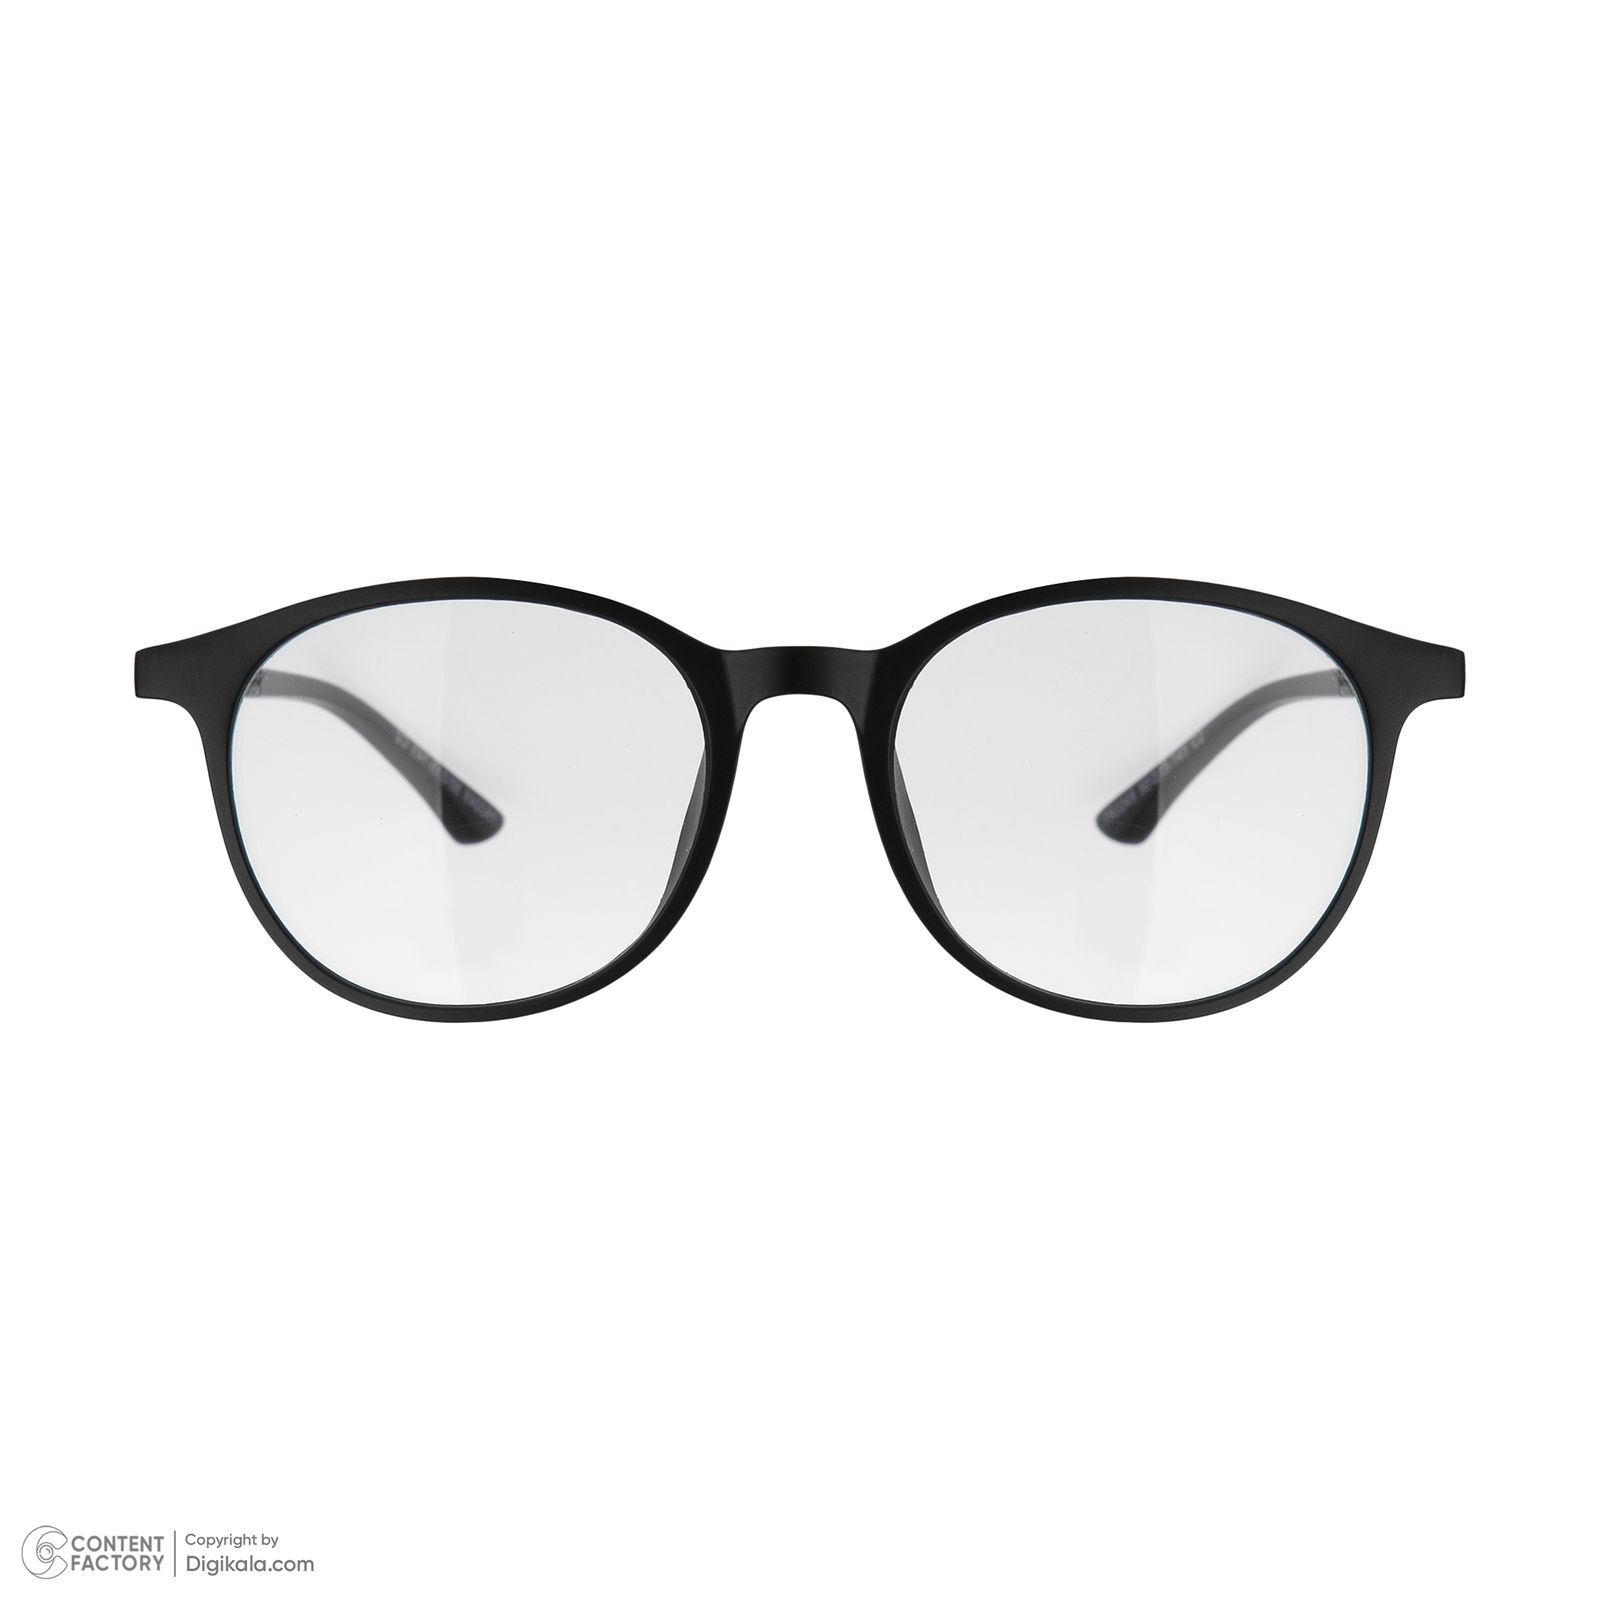 فریم عینک طبی دونیک مدل tr2245-c2 به همراه کاور آفتابی -  - 2